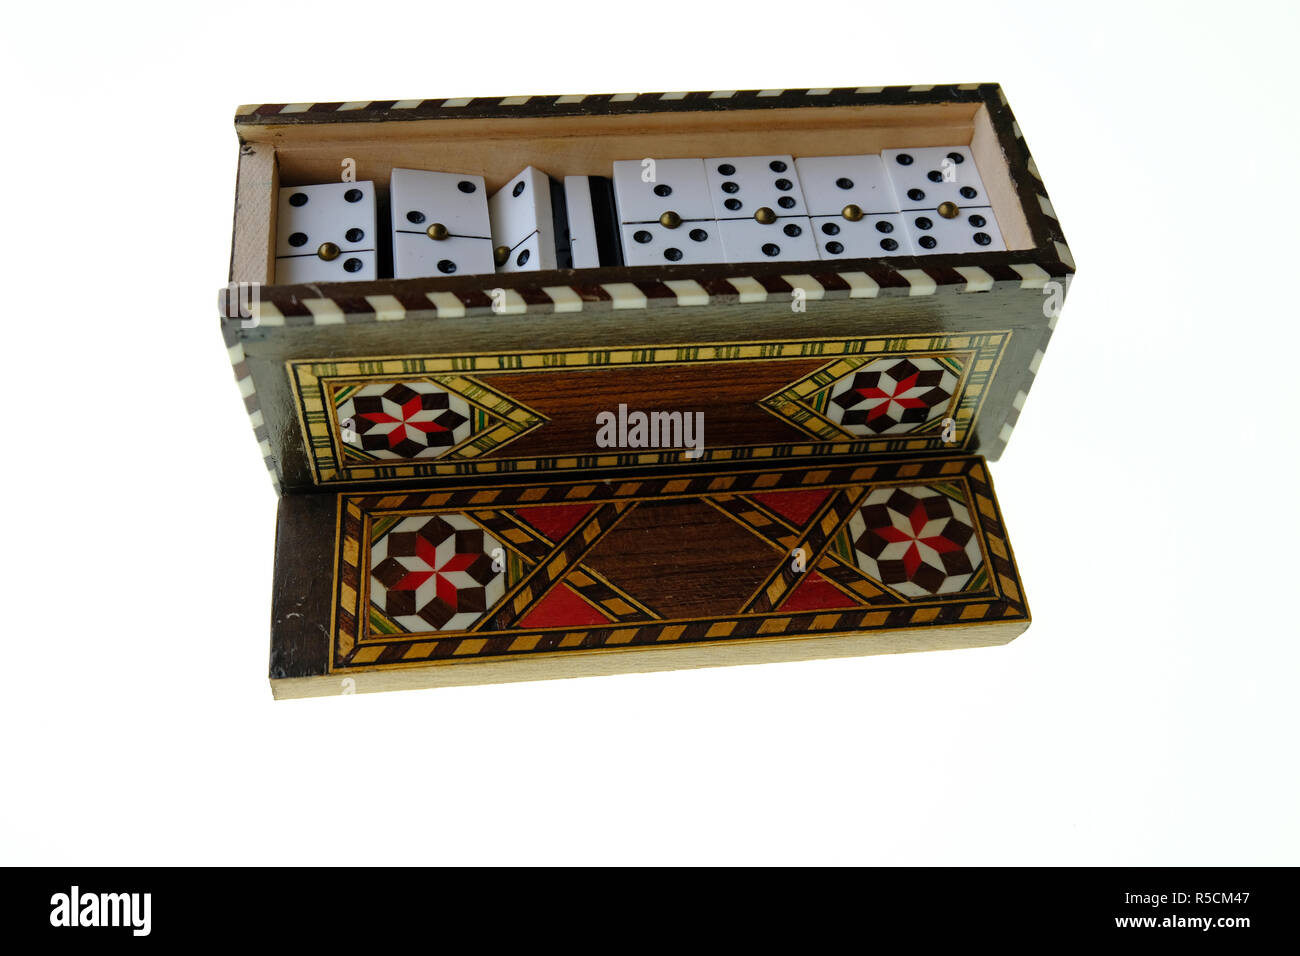 Petite boîte en bois avec couvercle coulissant marqueterie contenant un ensemble de petits dominos blancs avec des points noirs. Le tout sur un fond blanc Banque D'Images